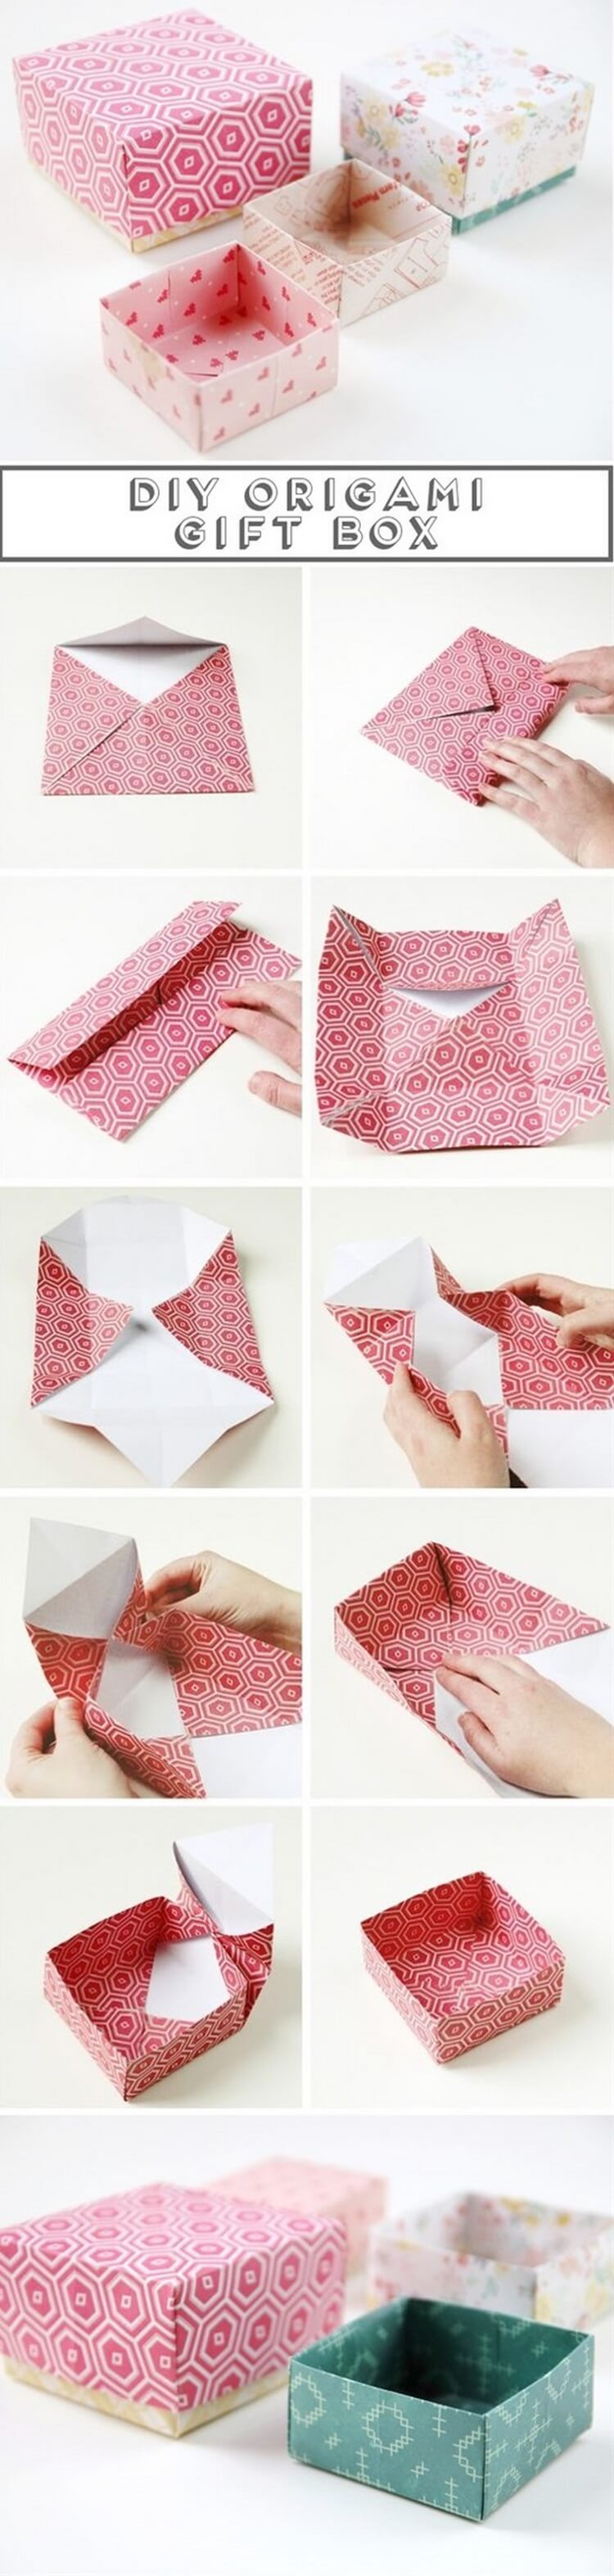 Подарок из бумаги и клея. Упаковка подарка в бумагу без коробки. Оригами подарок. Оригами упаковка для подарка. Оригами коробочка для подарка.